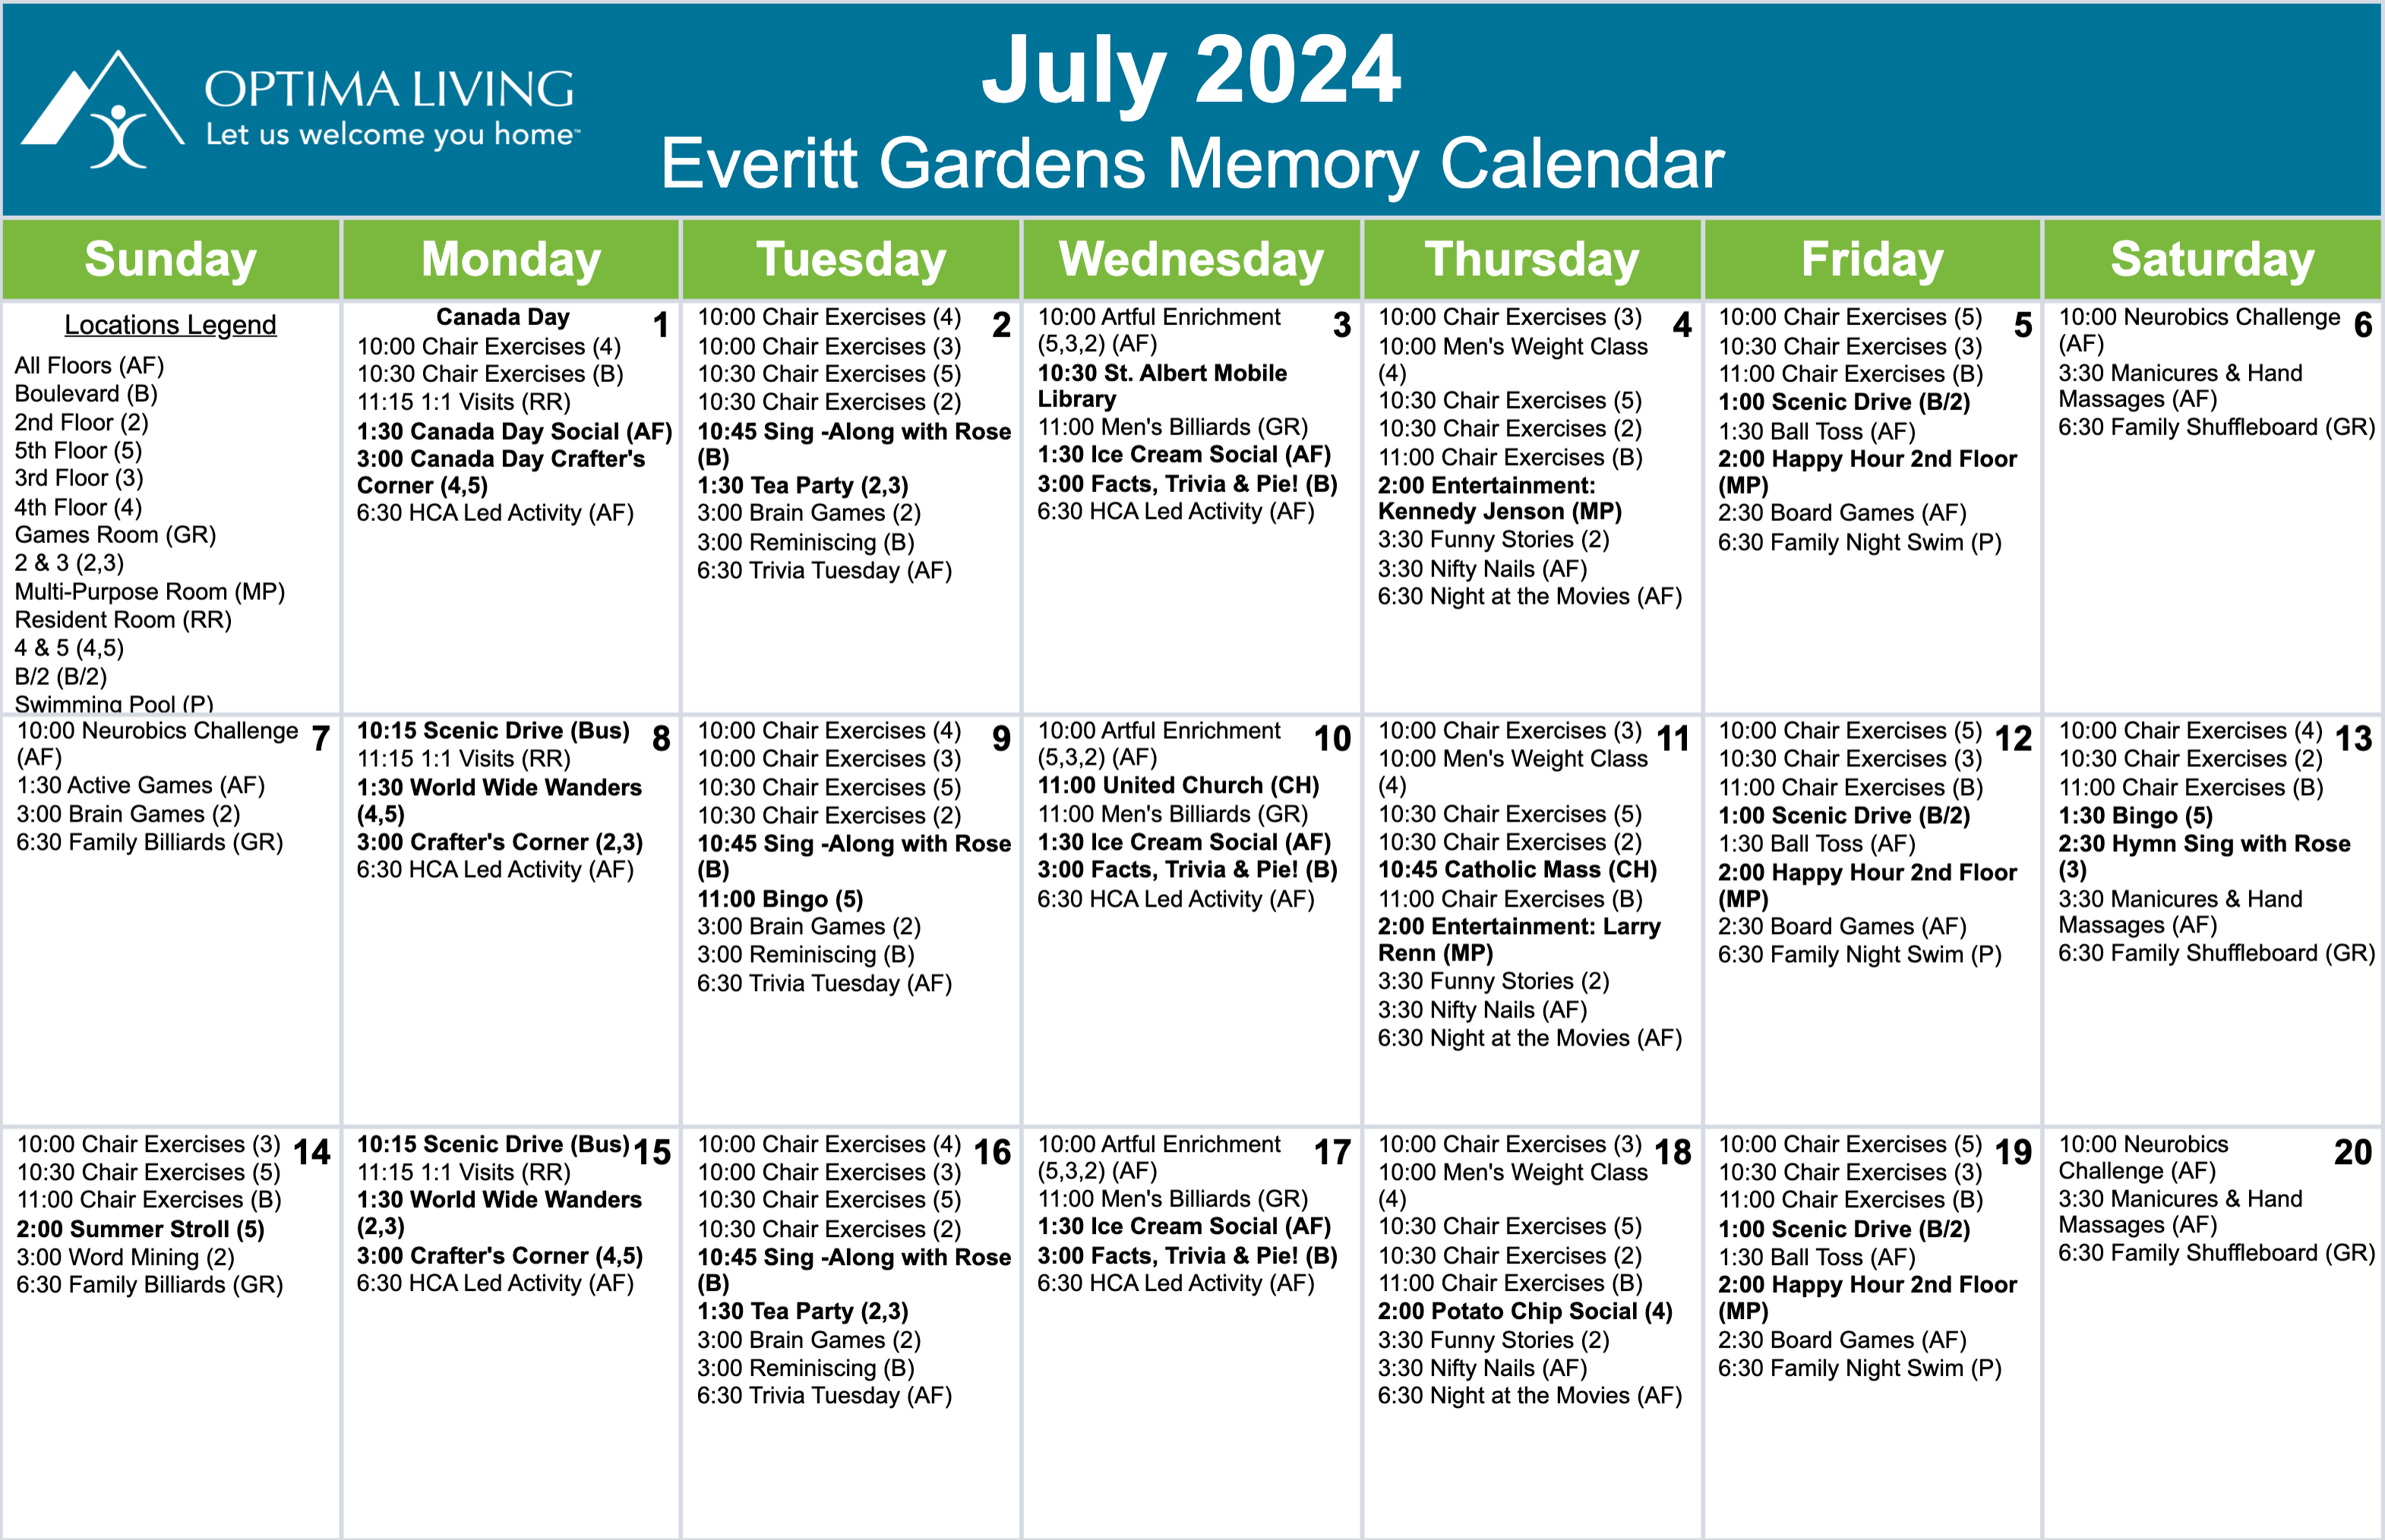 Everitt Gardens July 1 - 20 2024 supportive living event calendar